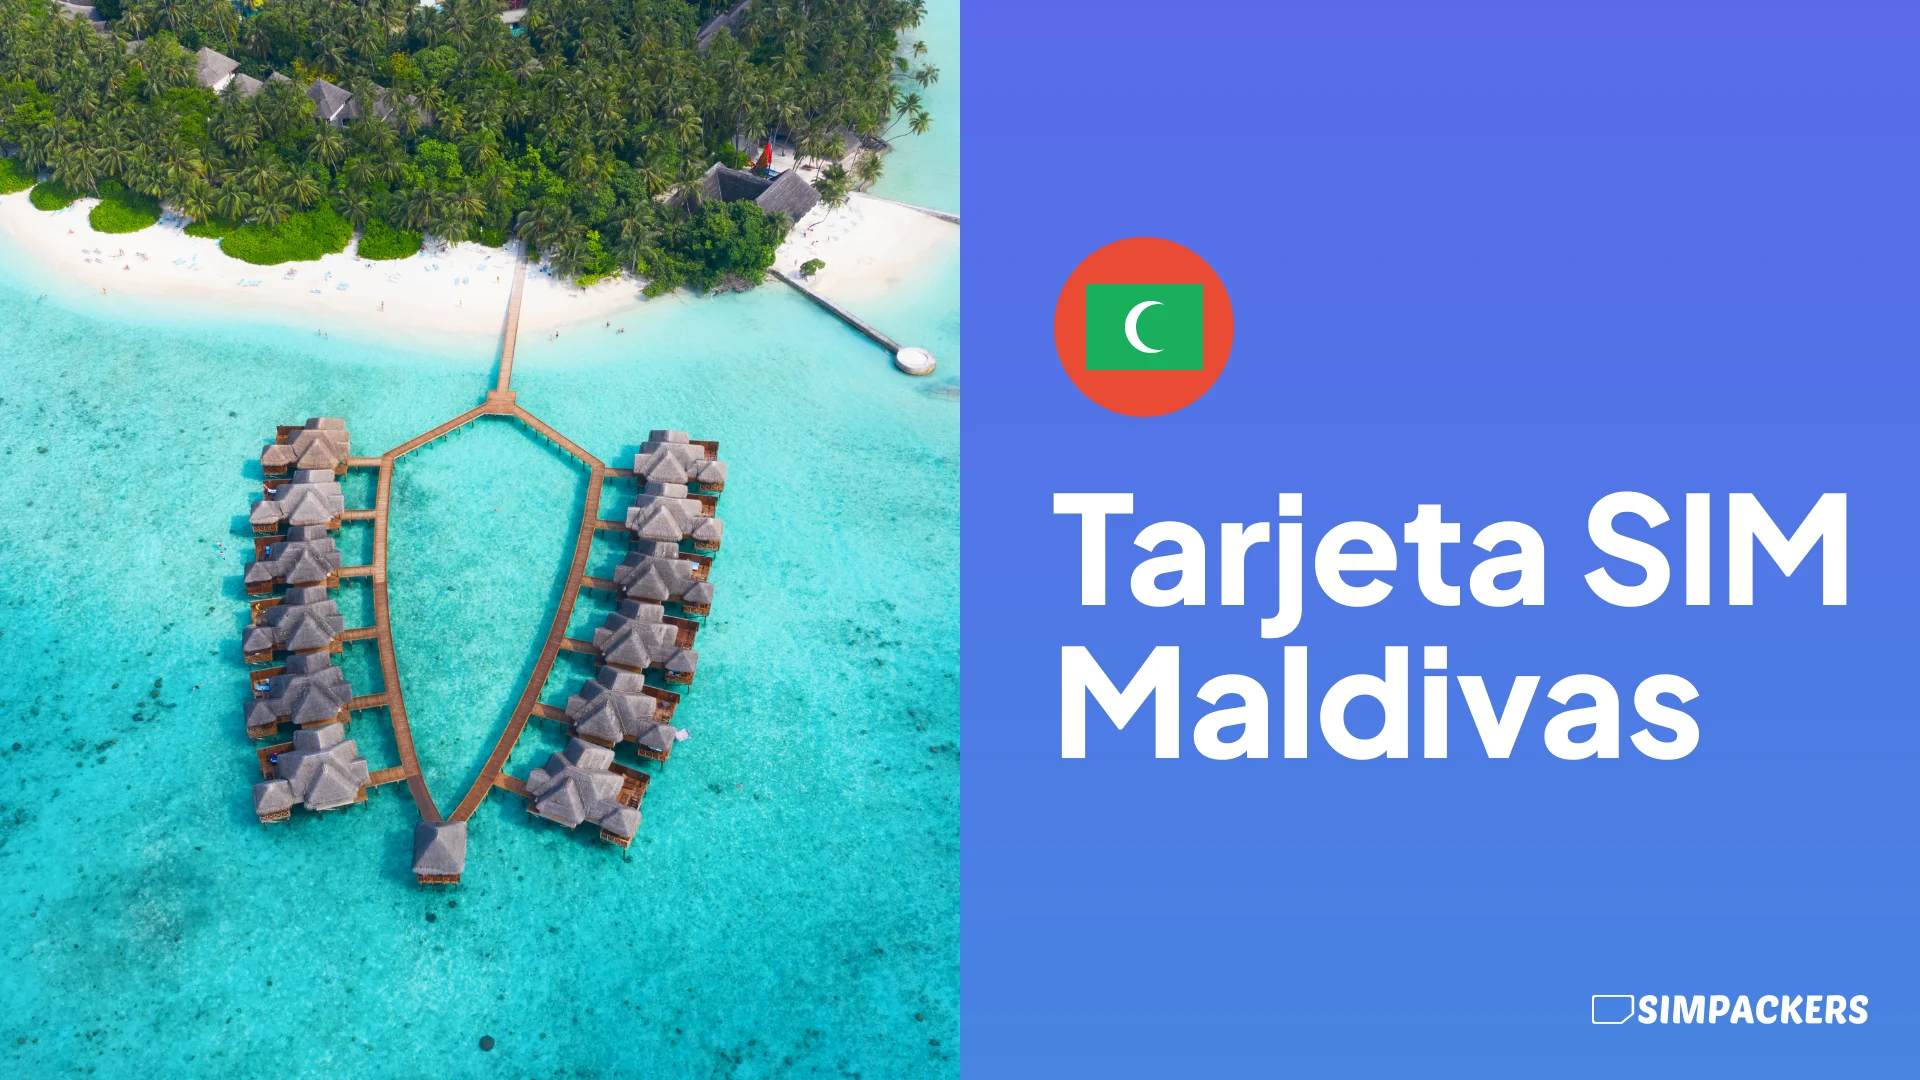 ES/FEATURED_IMAGES/tarjeta-sim-maldivas.webp